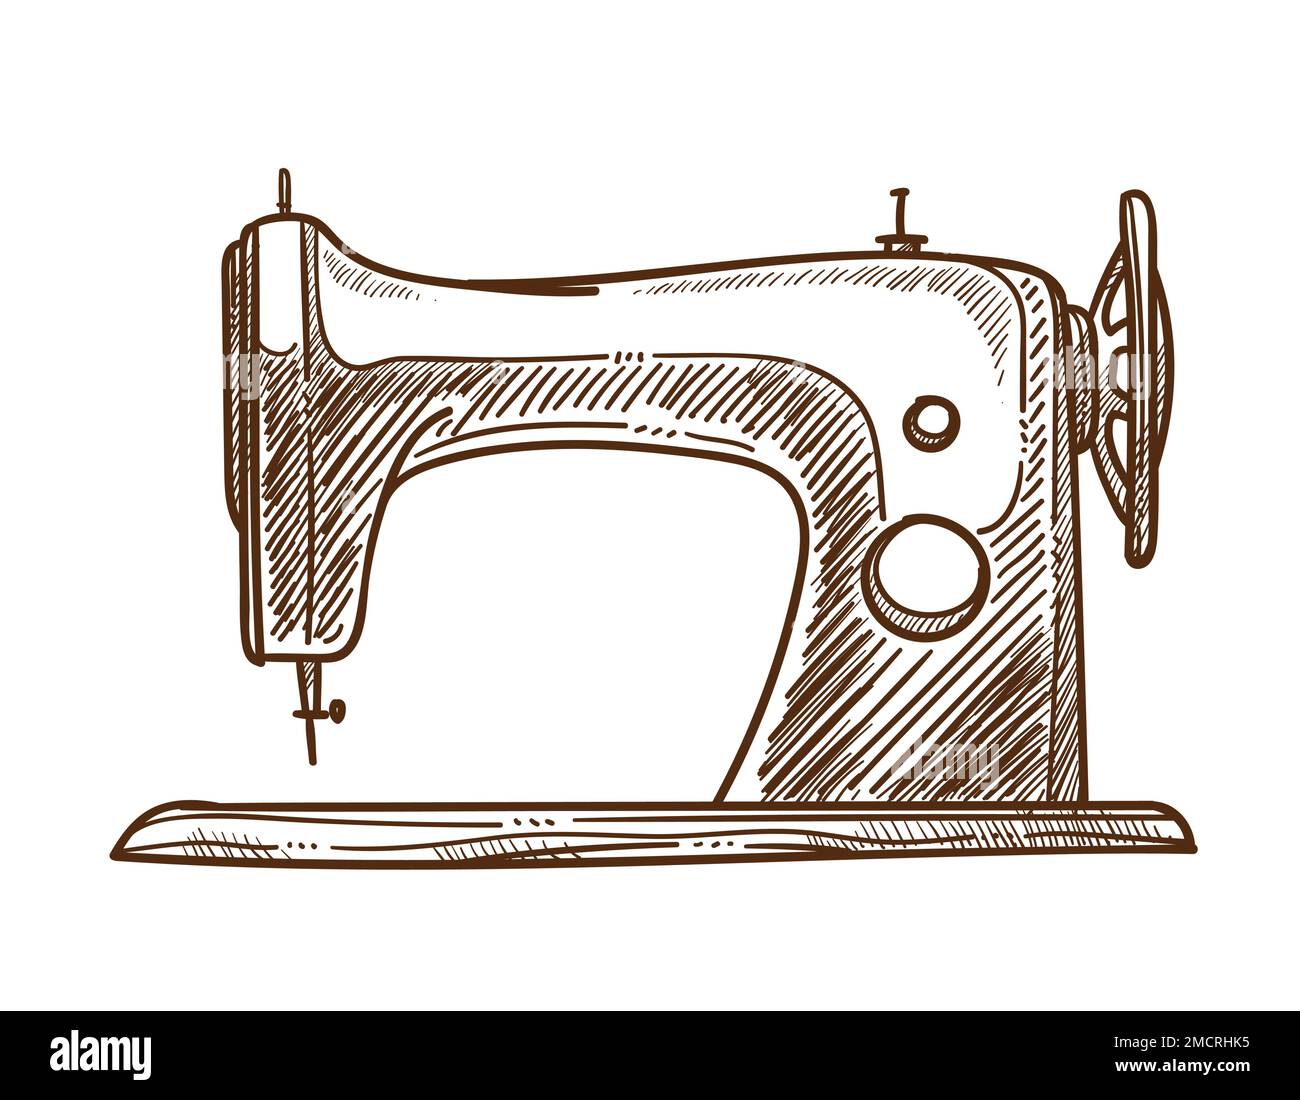 Costurera herramienta máquina de coser aislado bosquejo de ropa